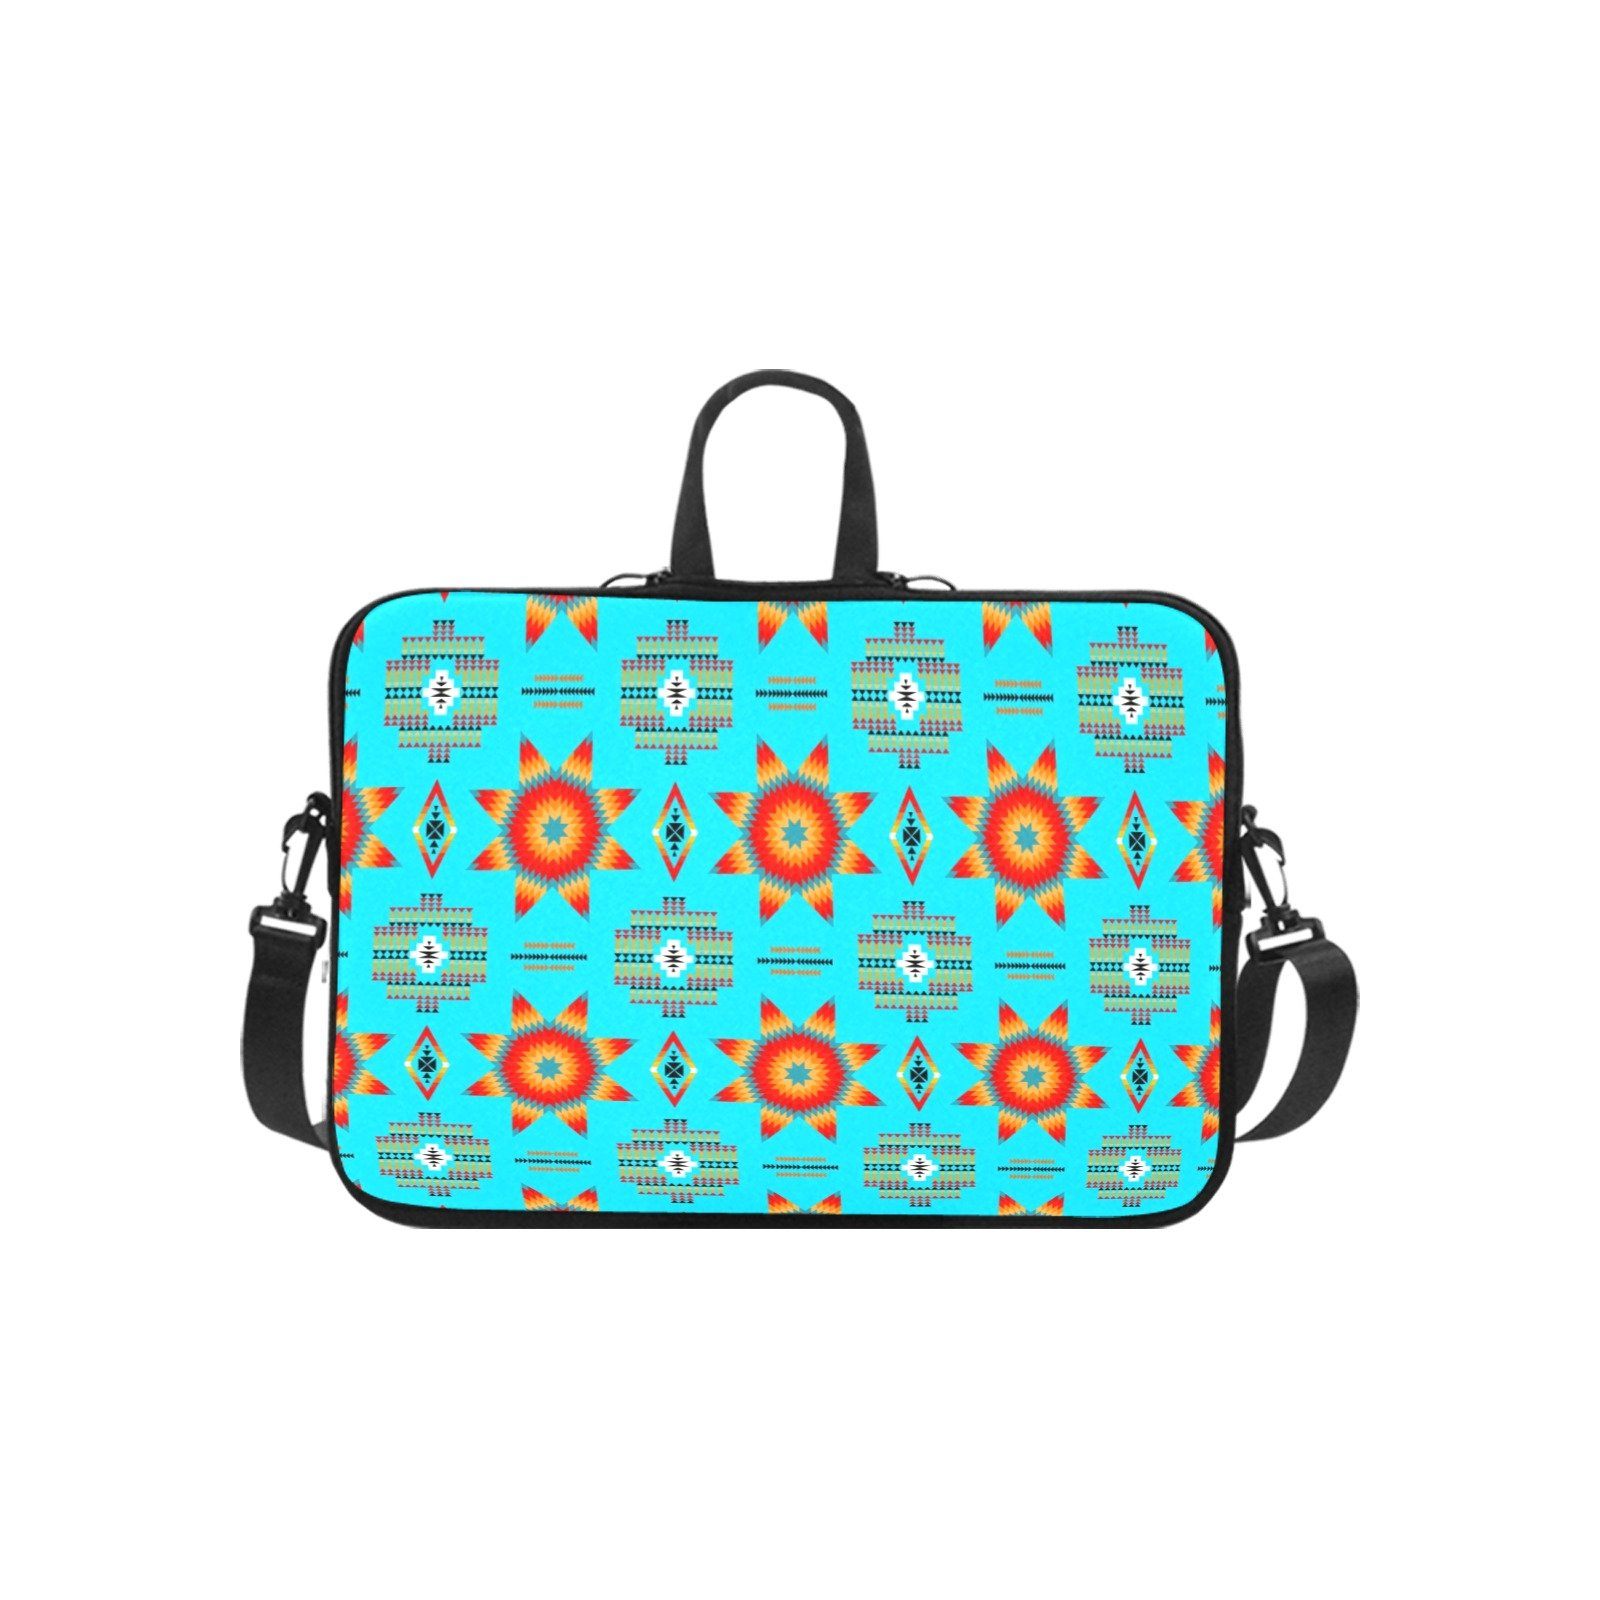 Rising Star Harvest Moon Laptop Handbags 14" bag e-joyer 